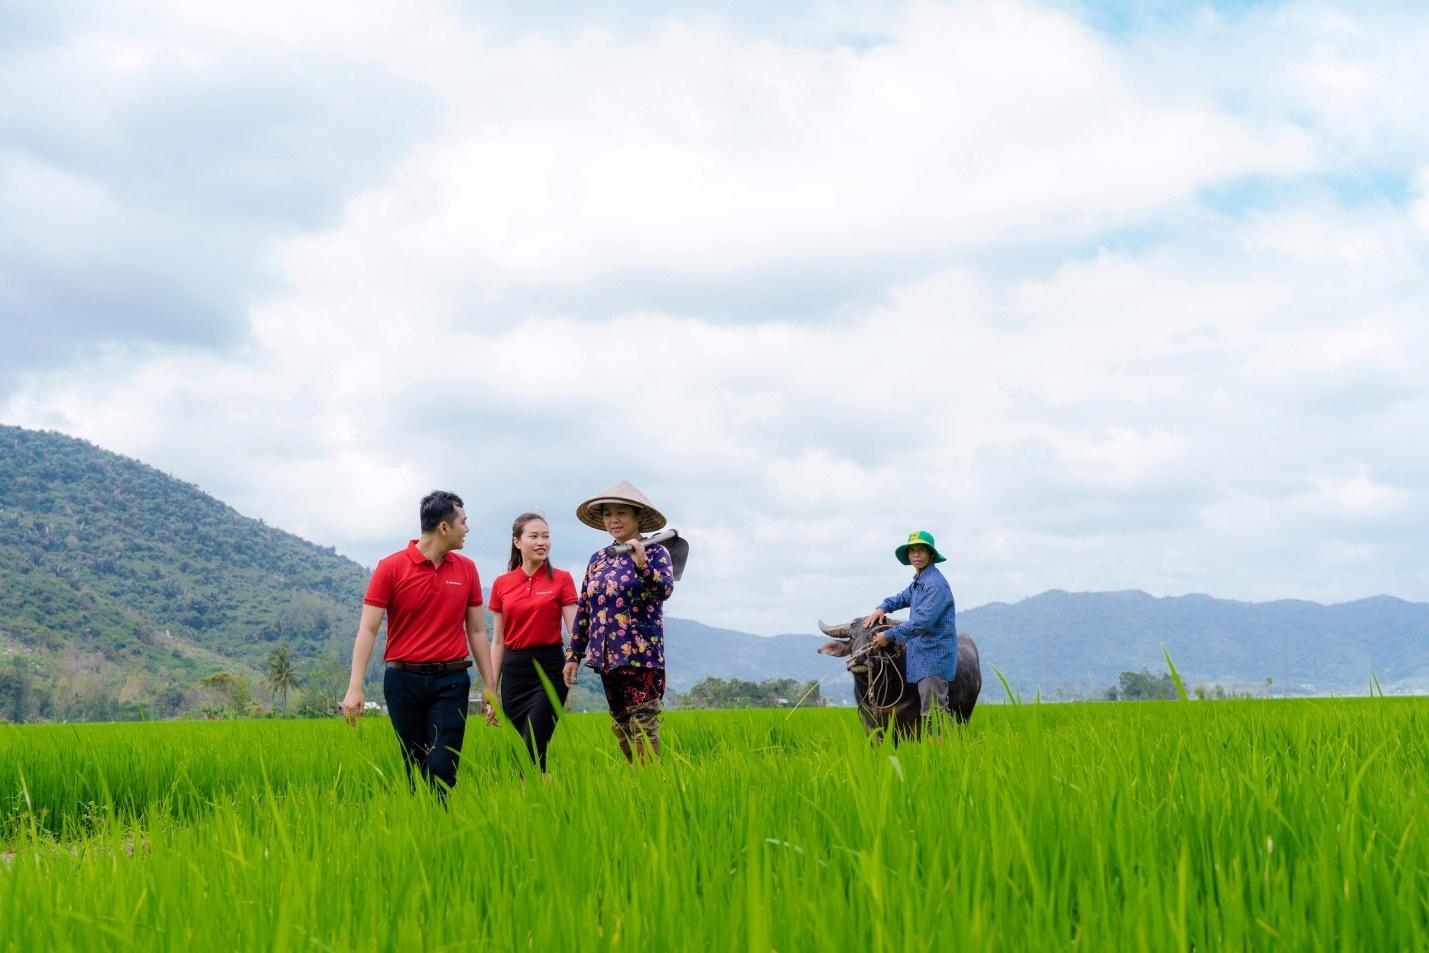 Agribank cung cấp sản phẩm dịch vụ thực hiện phát triển bền vững 1 triệu ha lúa chất lượng cao gắn với tăng trưởng xanh - Ảnh 2.